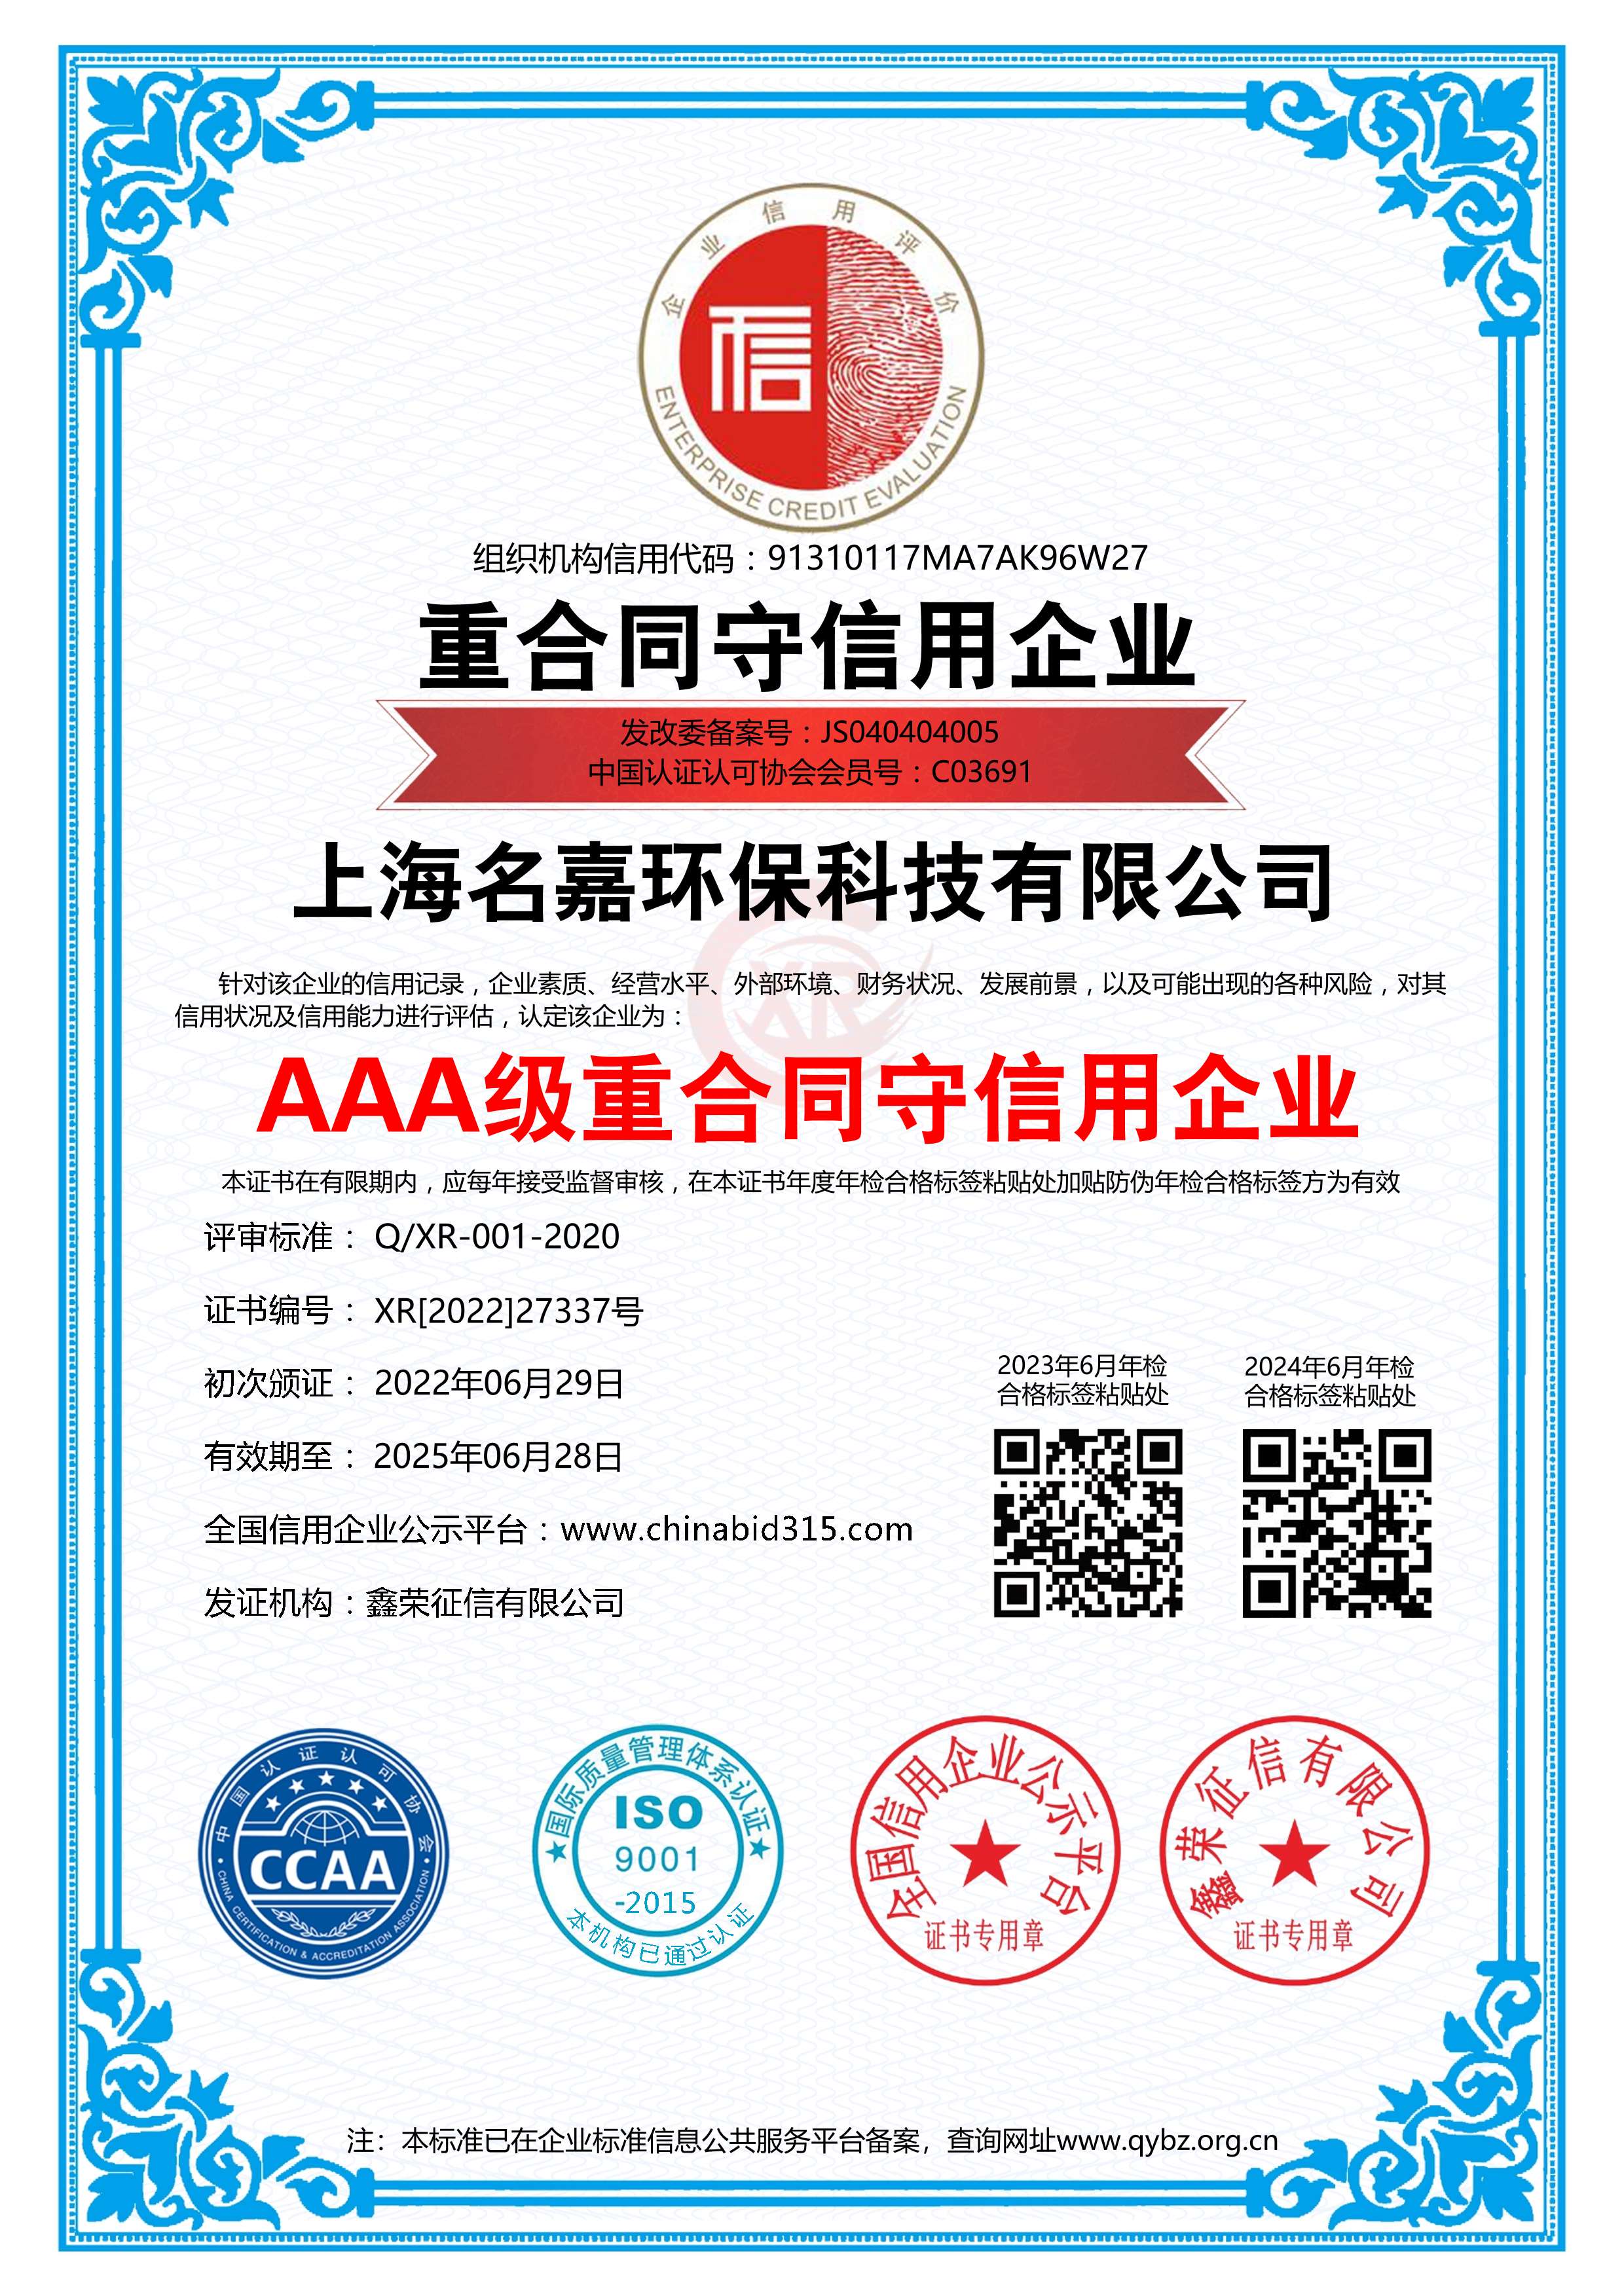 上海名嘉AAA级重合同信用企业